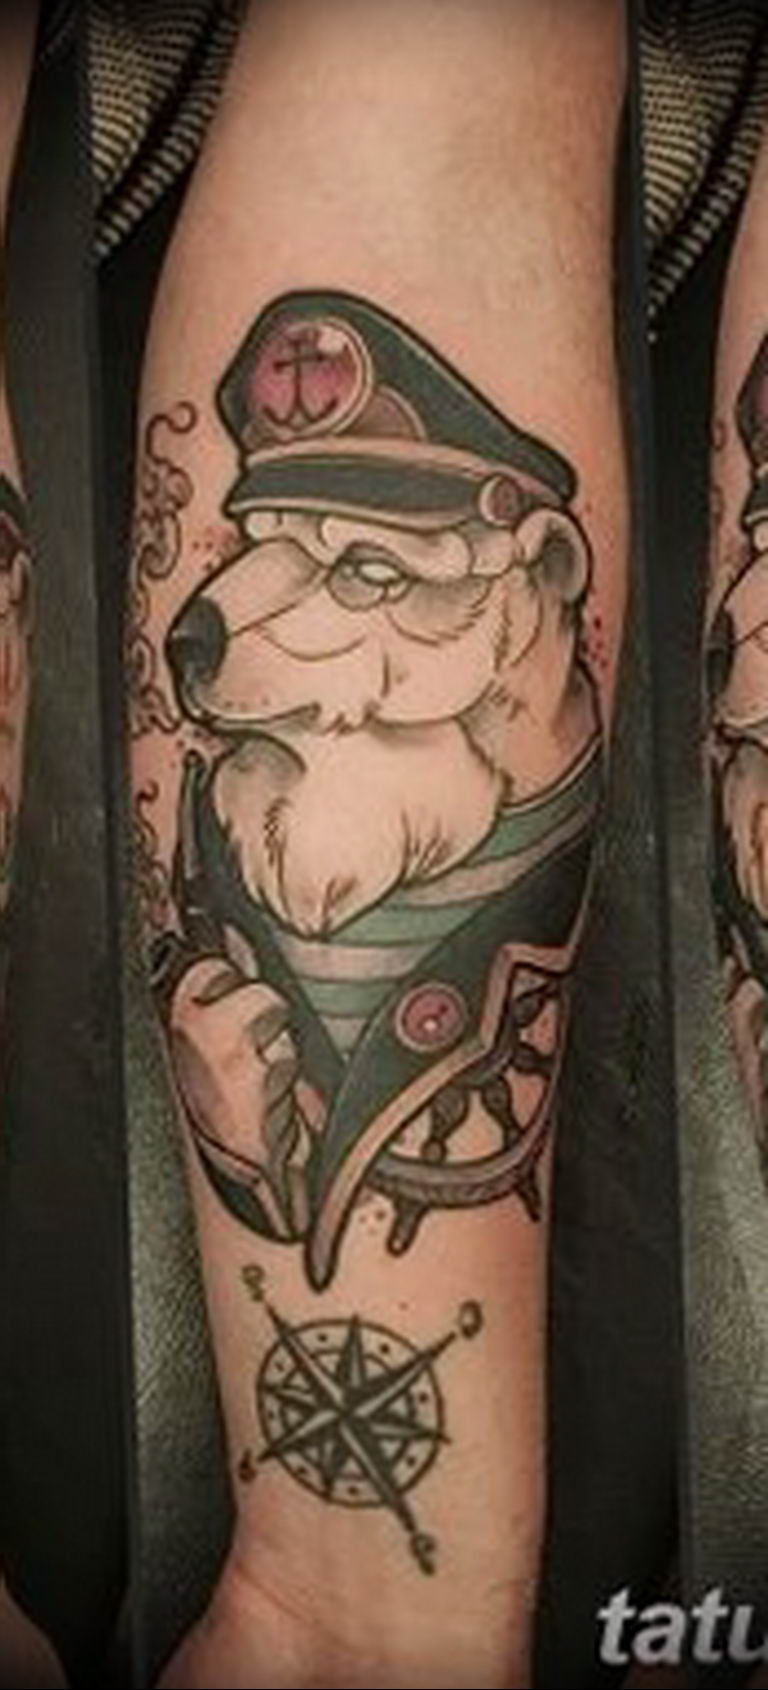 Photo Tattoo Polar Bear 05 02 2019 142 Polar Bear Tattoo Idea